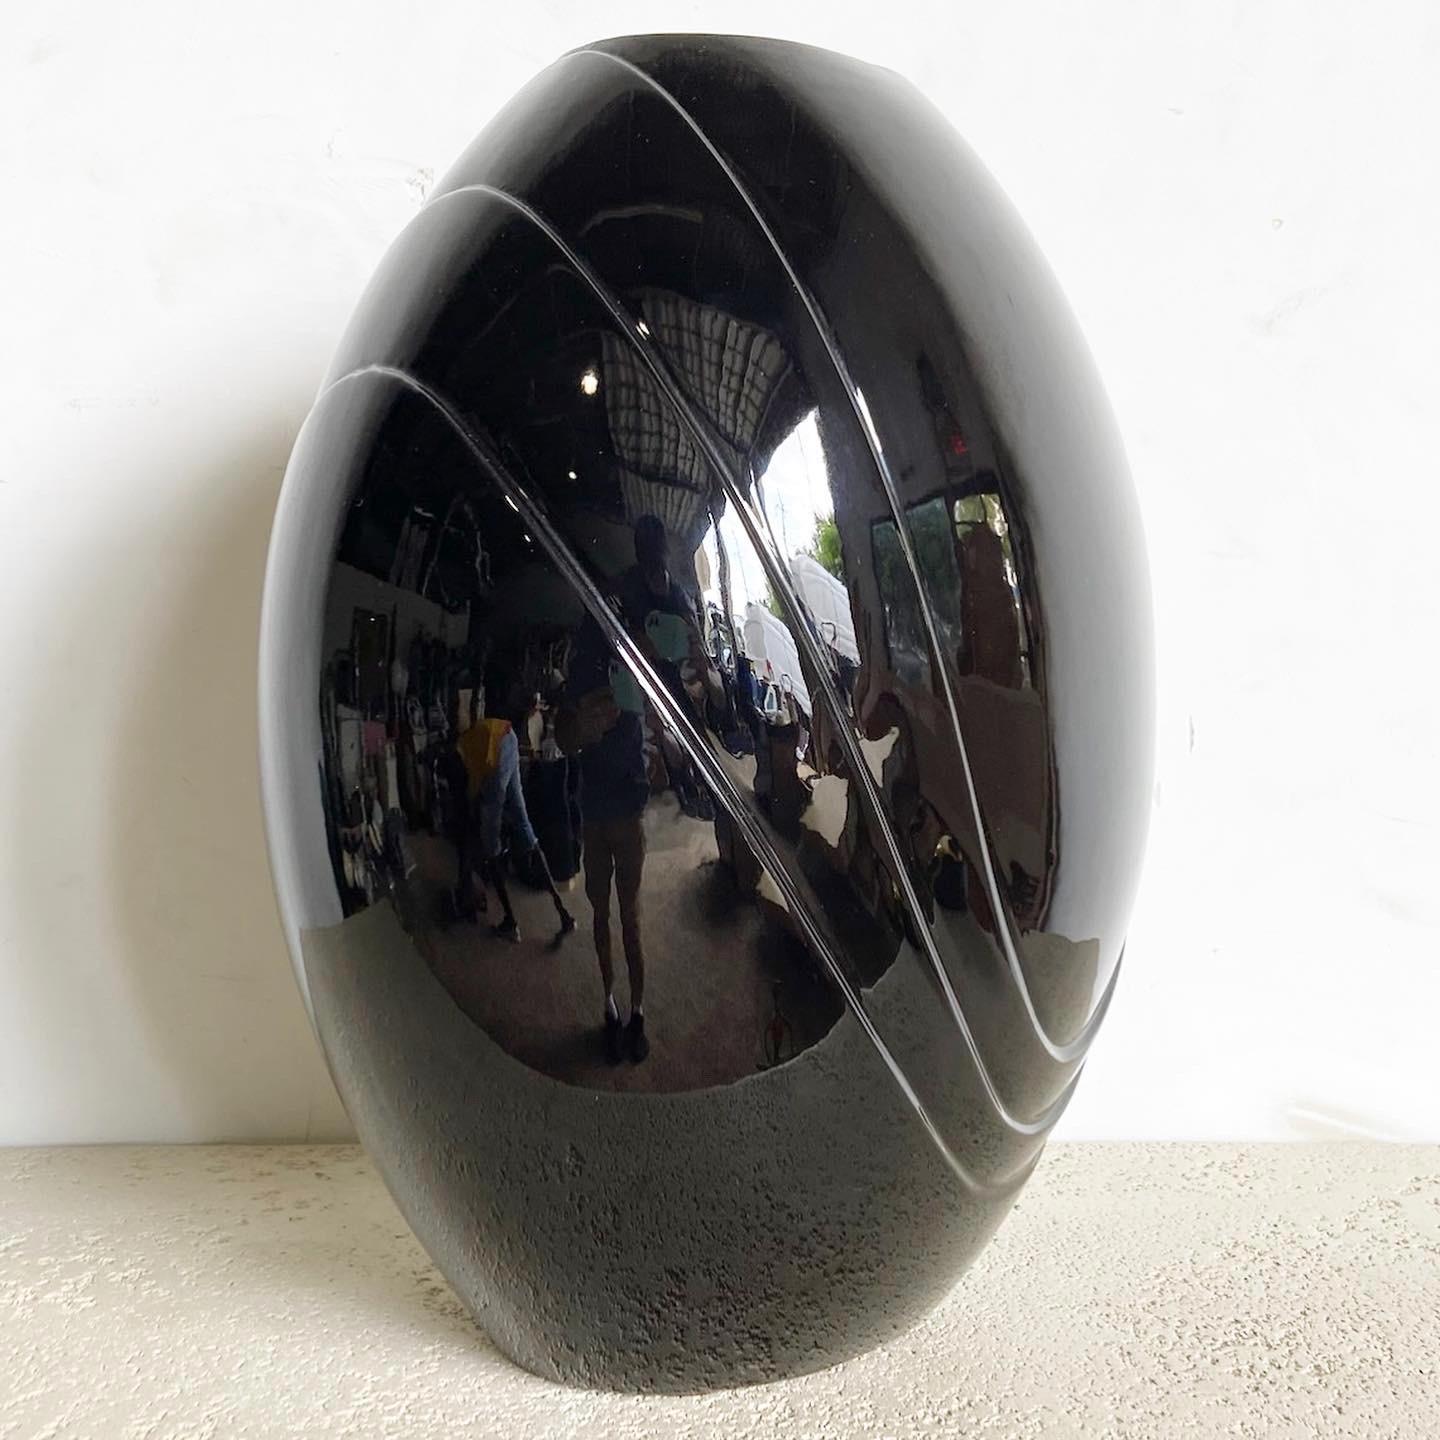 Tauchen Sie ein in die Faszination des postmodernen Designs mit dieser Black Gloss Vase von Haeger. Diese Vase mit ihrer faszinierenden glänzenden Oberfläche und ihrer kantigen Form ist mehr als nur ein Behältnis - sie ist ein